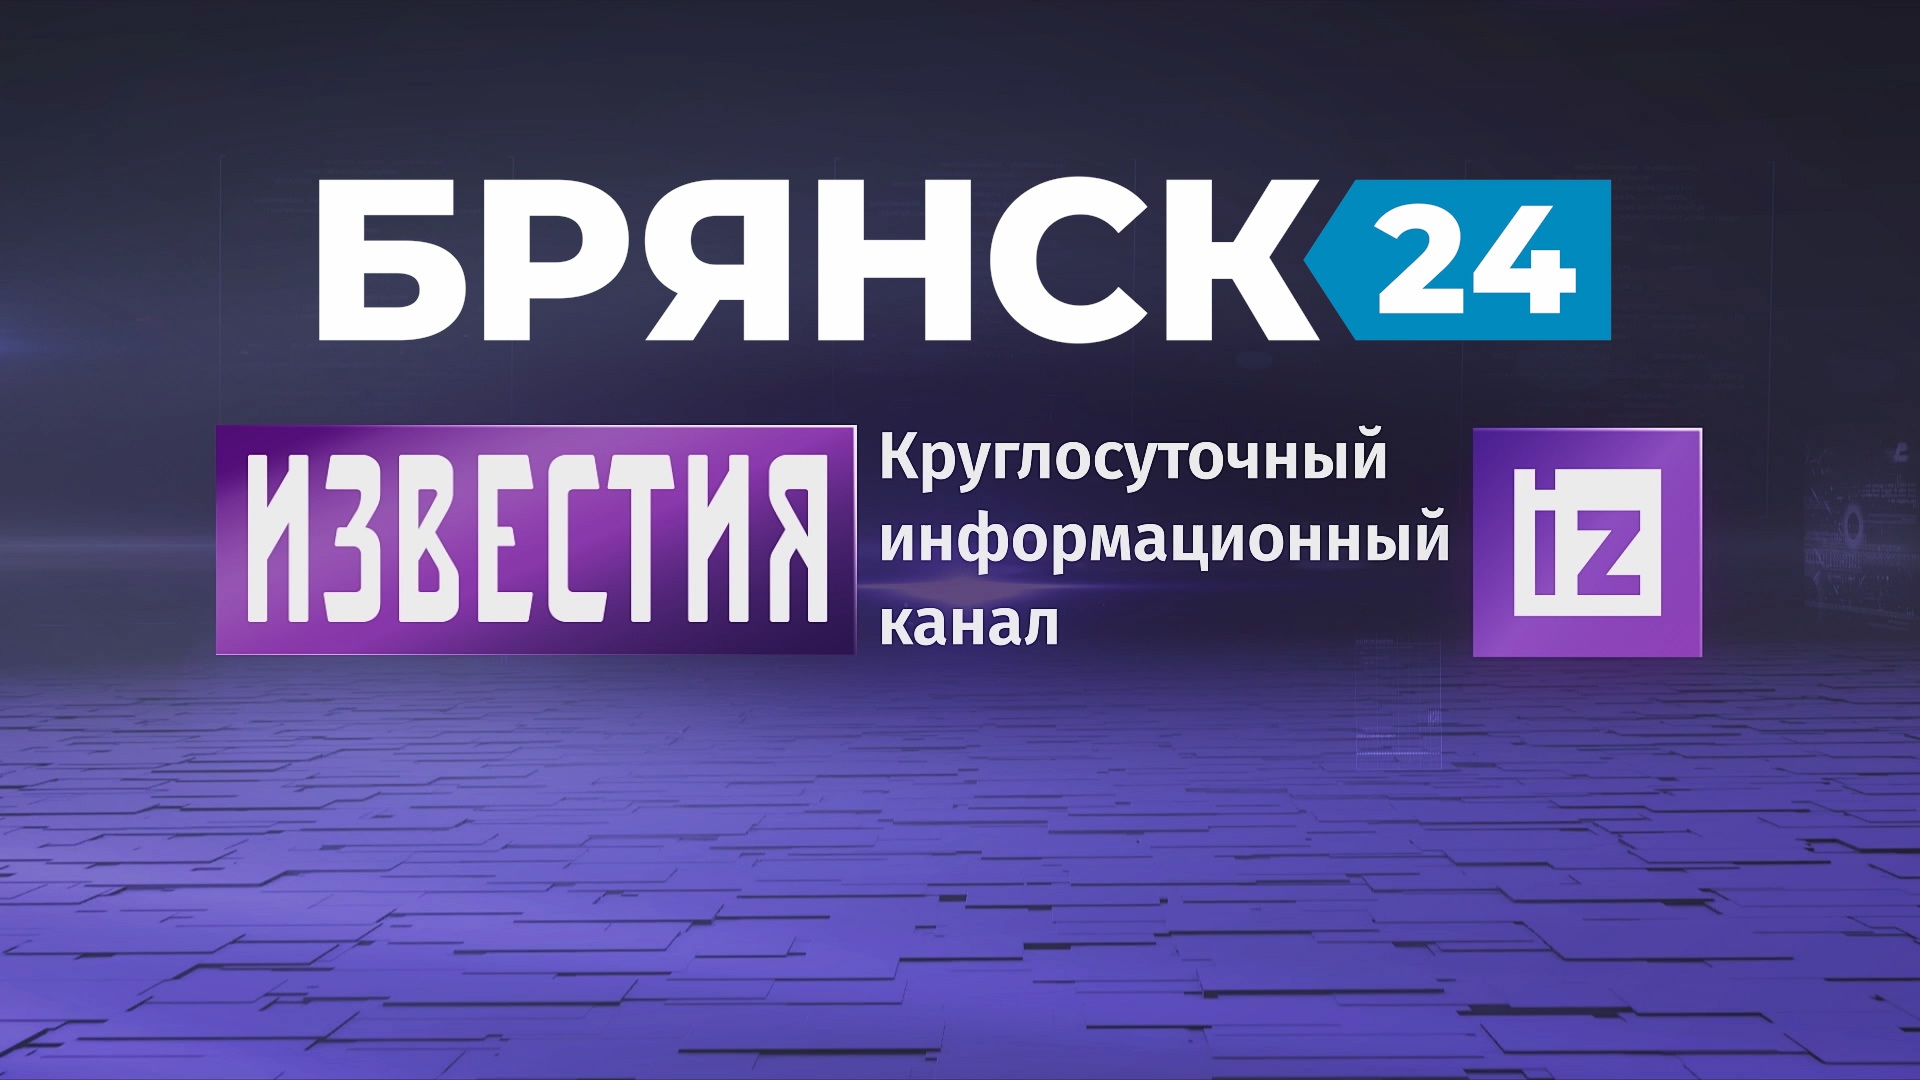 «Брянск24» с 1 июня начнет сотрудничество с федеральным телеканалом «Известия»